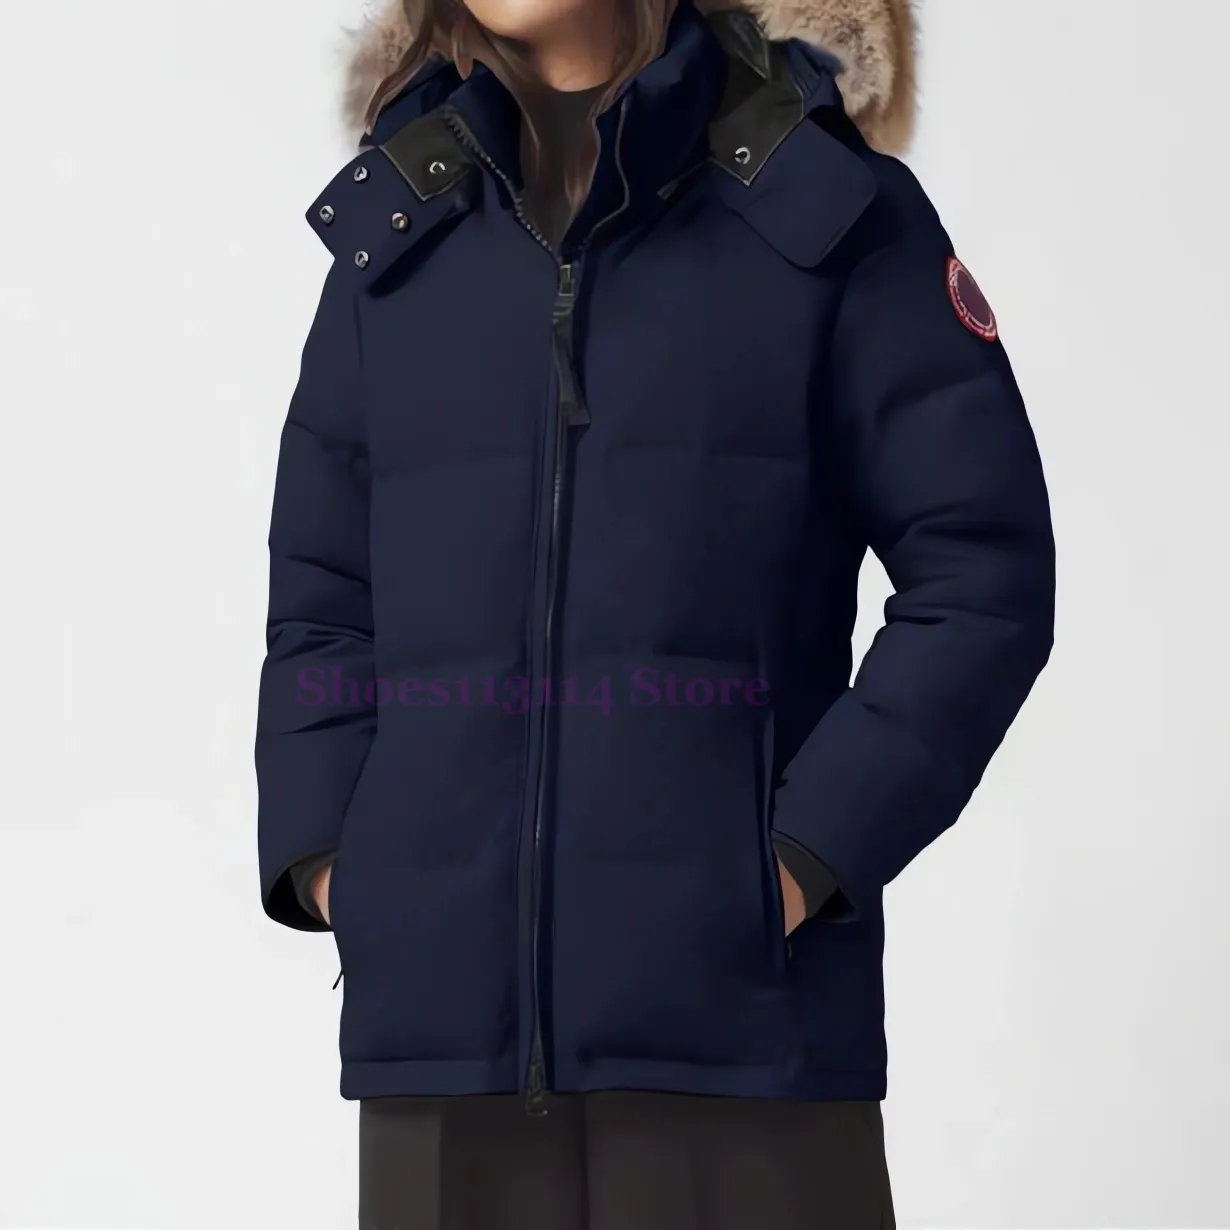 Канадские женские куртки гусиные женские канадские зимние теплые уличные пуховики с капюшоном, модные гусиные пуховики, роскошная классическая верхняя одежда, толстая 3OD5